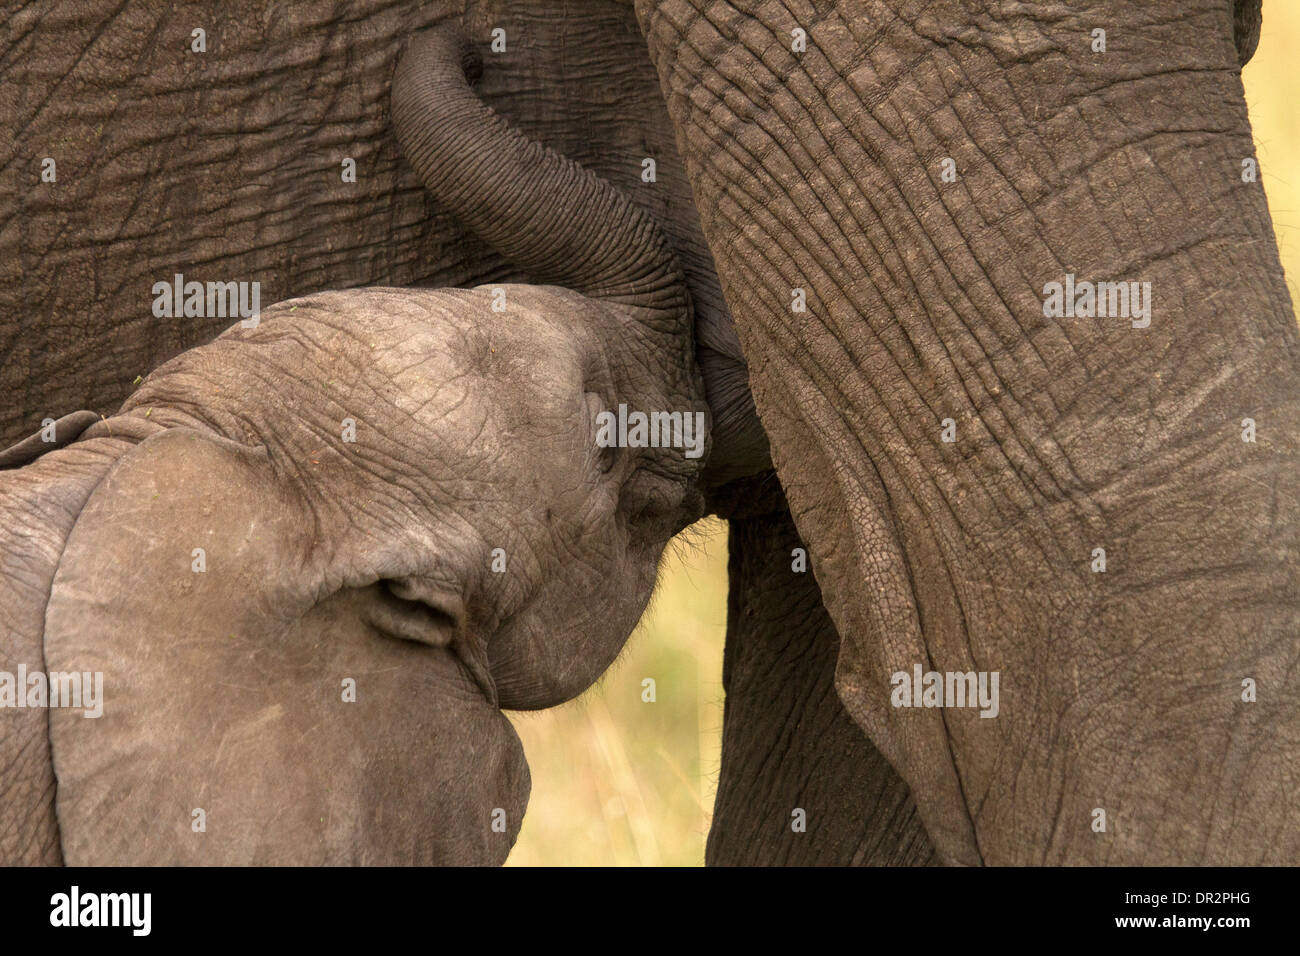 Giovane Elefante, Loxodonta africana di alimentazione con un adulto Foto Stock